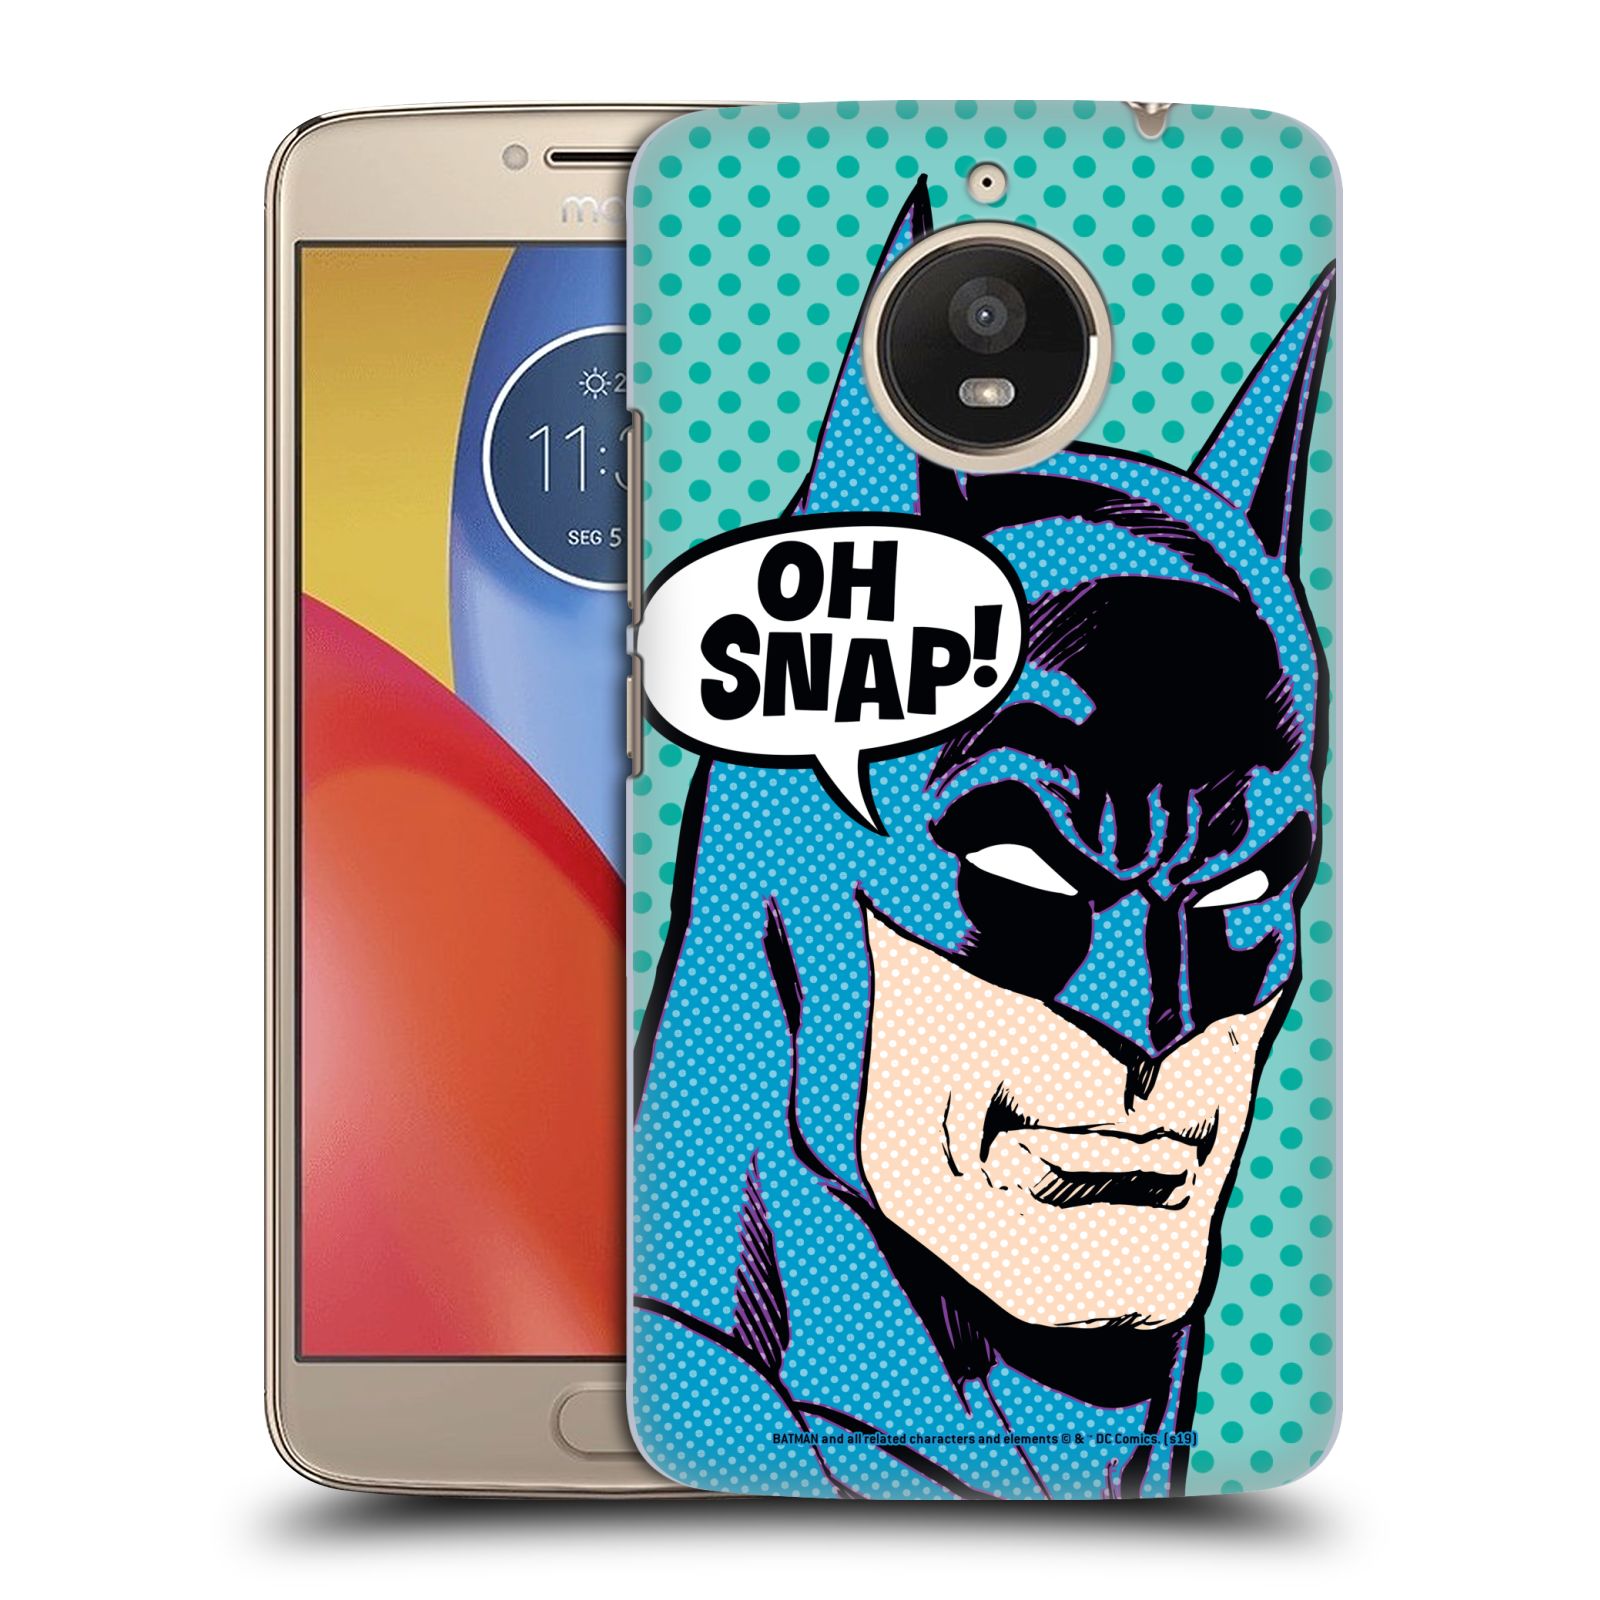 Pouzdro na mobil Lenovo Moto E4 PLUS - HEAD CASE - DC komix Batman Pop Art tvář